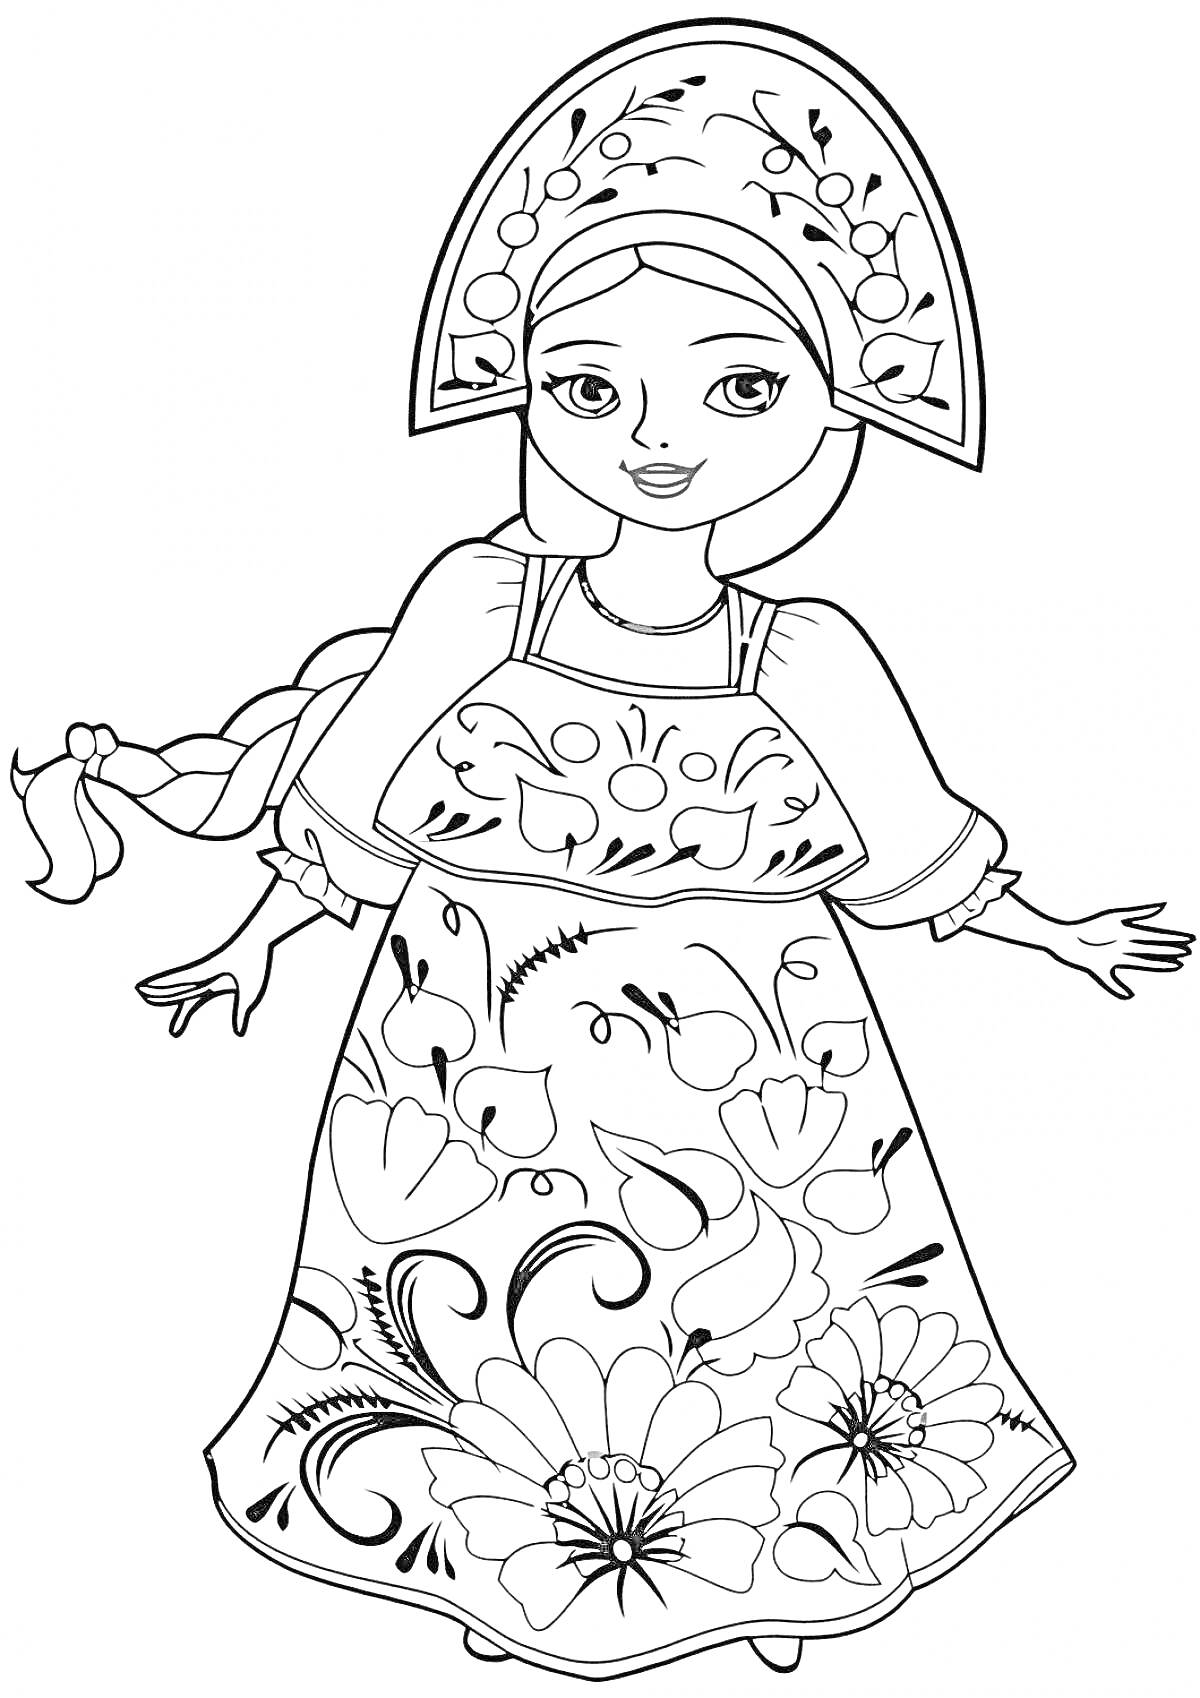 Девочка-царевна в кокошнике и сарафане с цветочным орнаментом